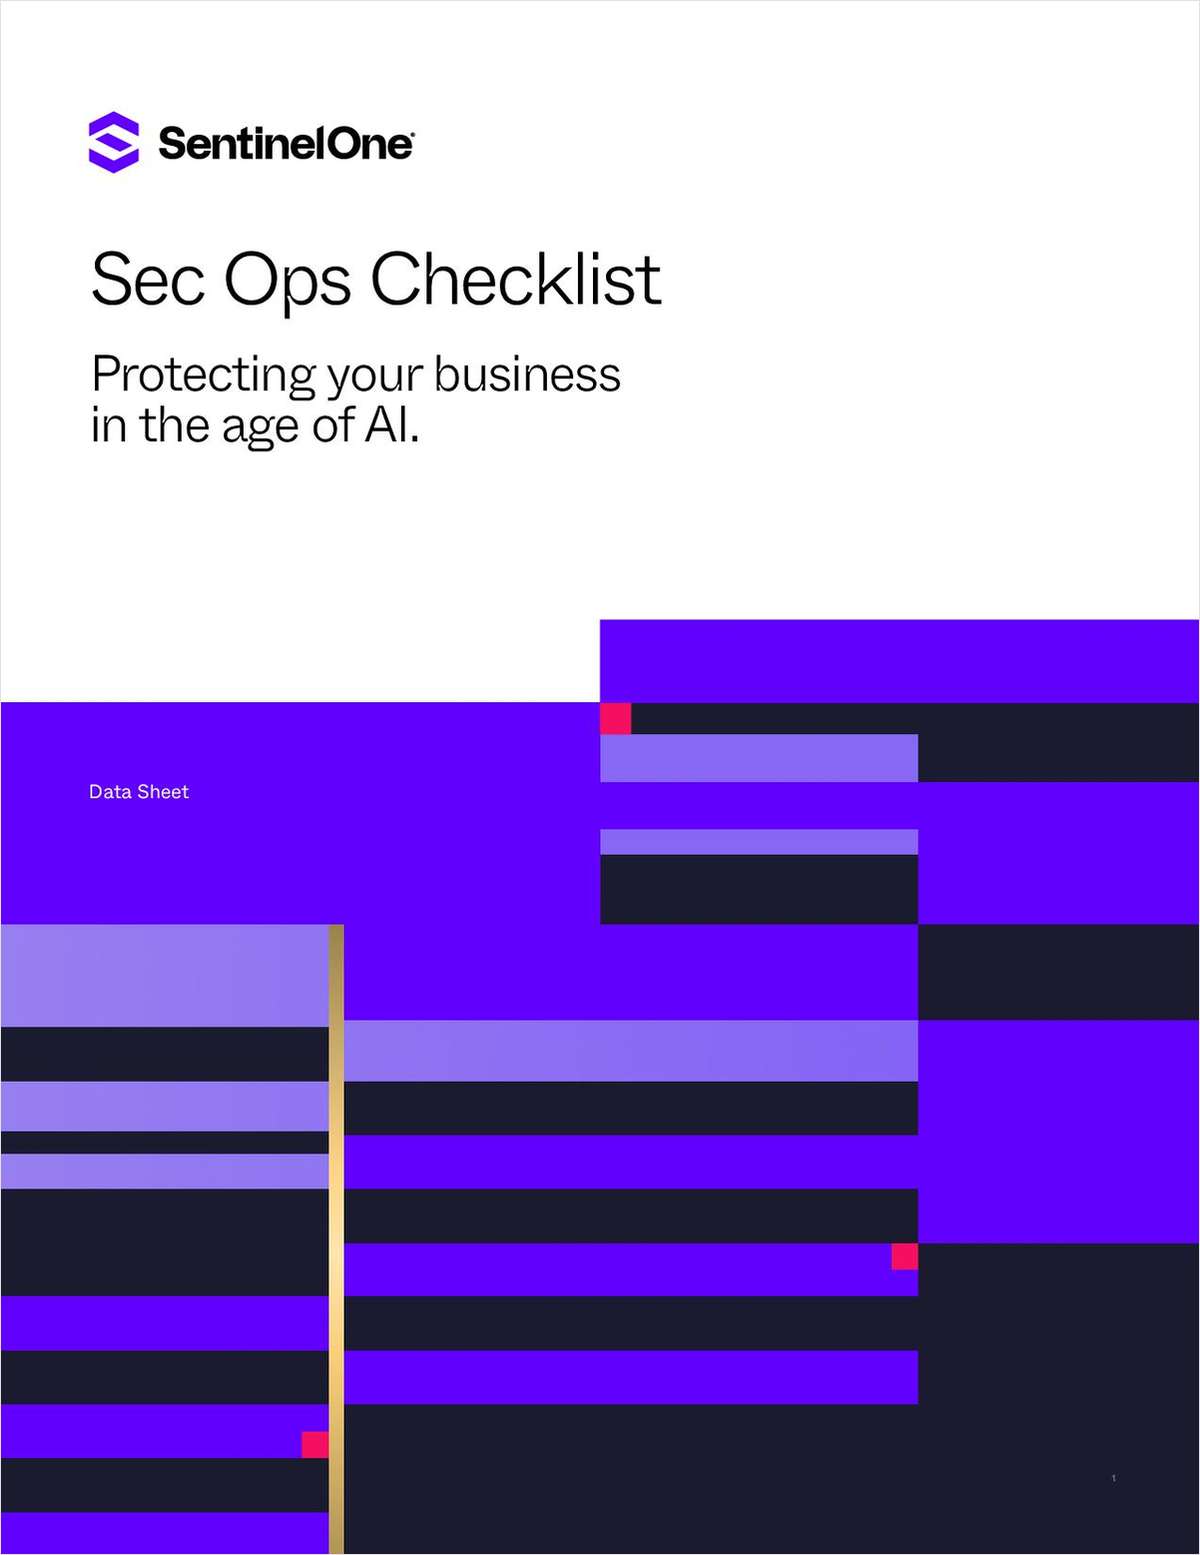 SecOps Checklist